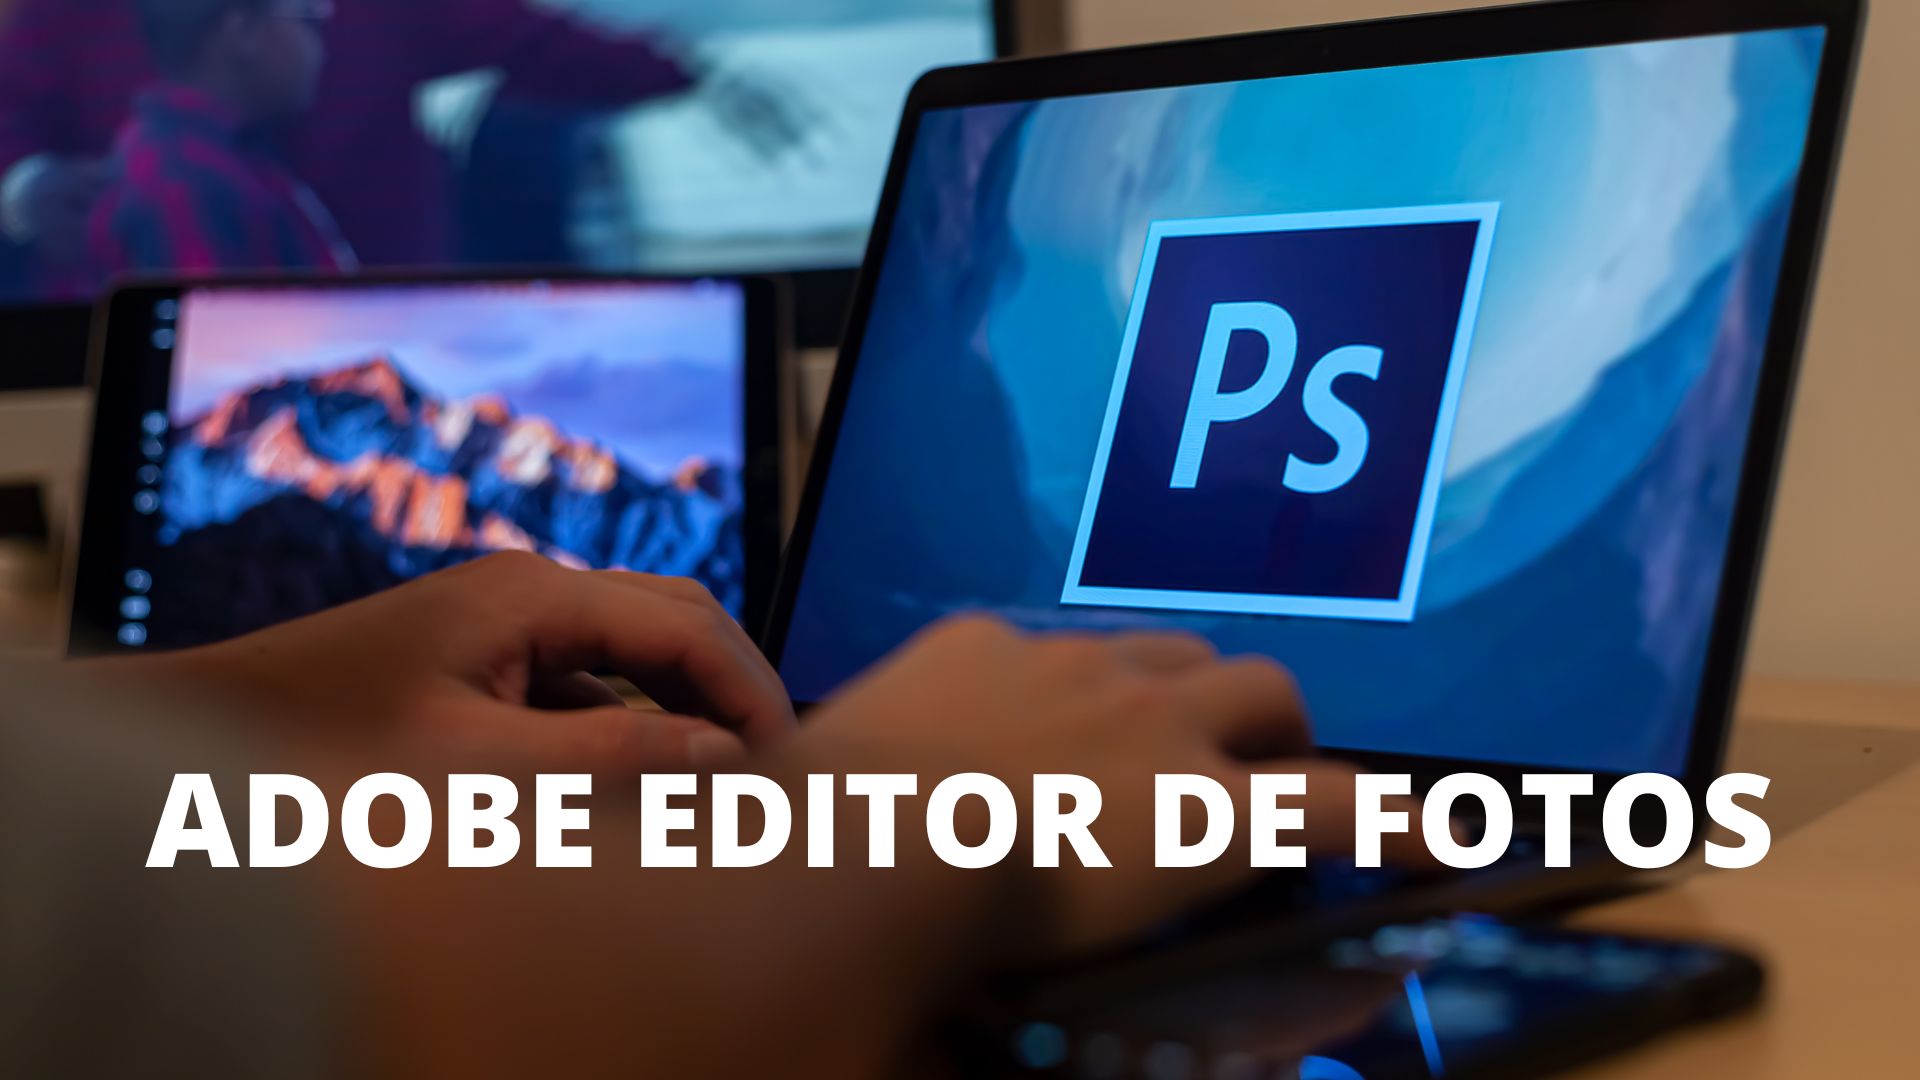 Adobe Editor de Fotos